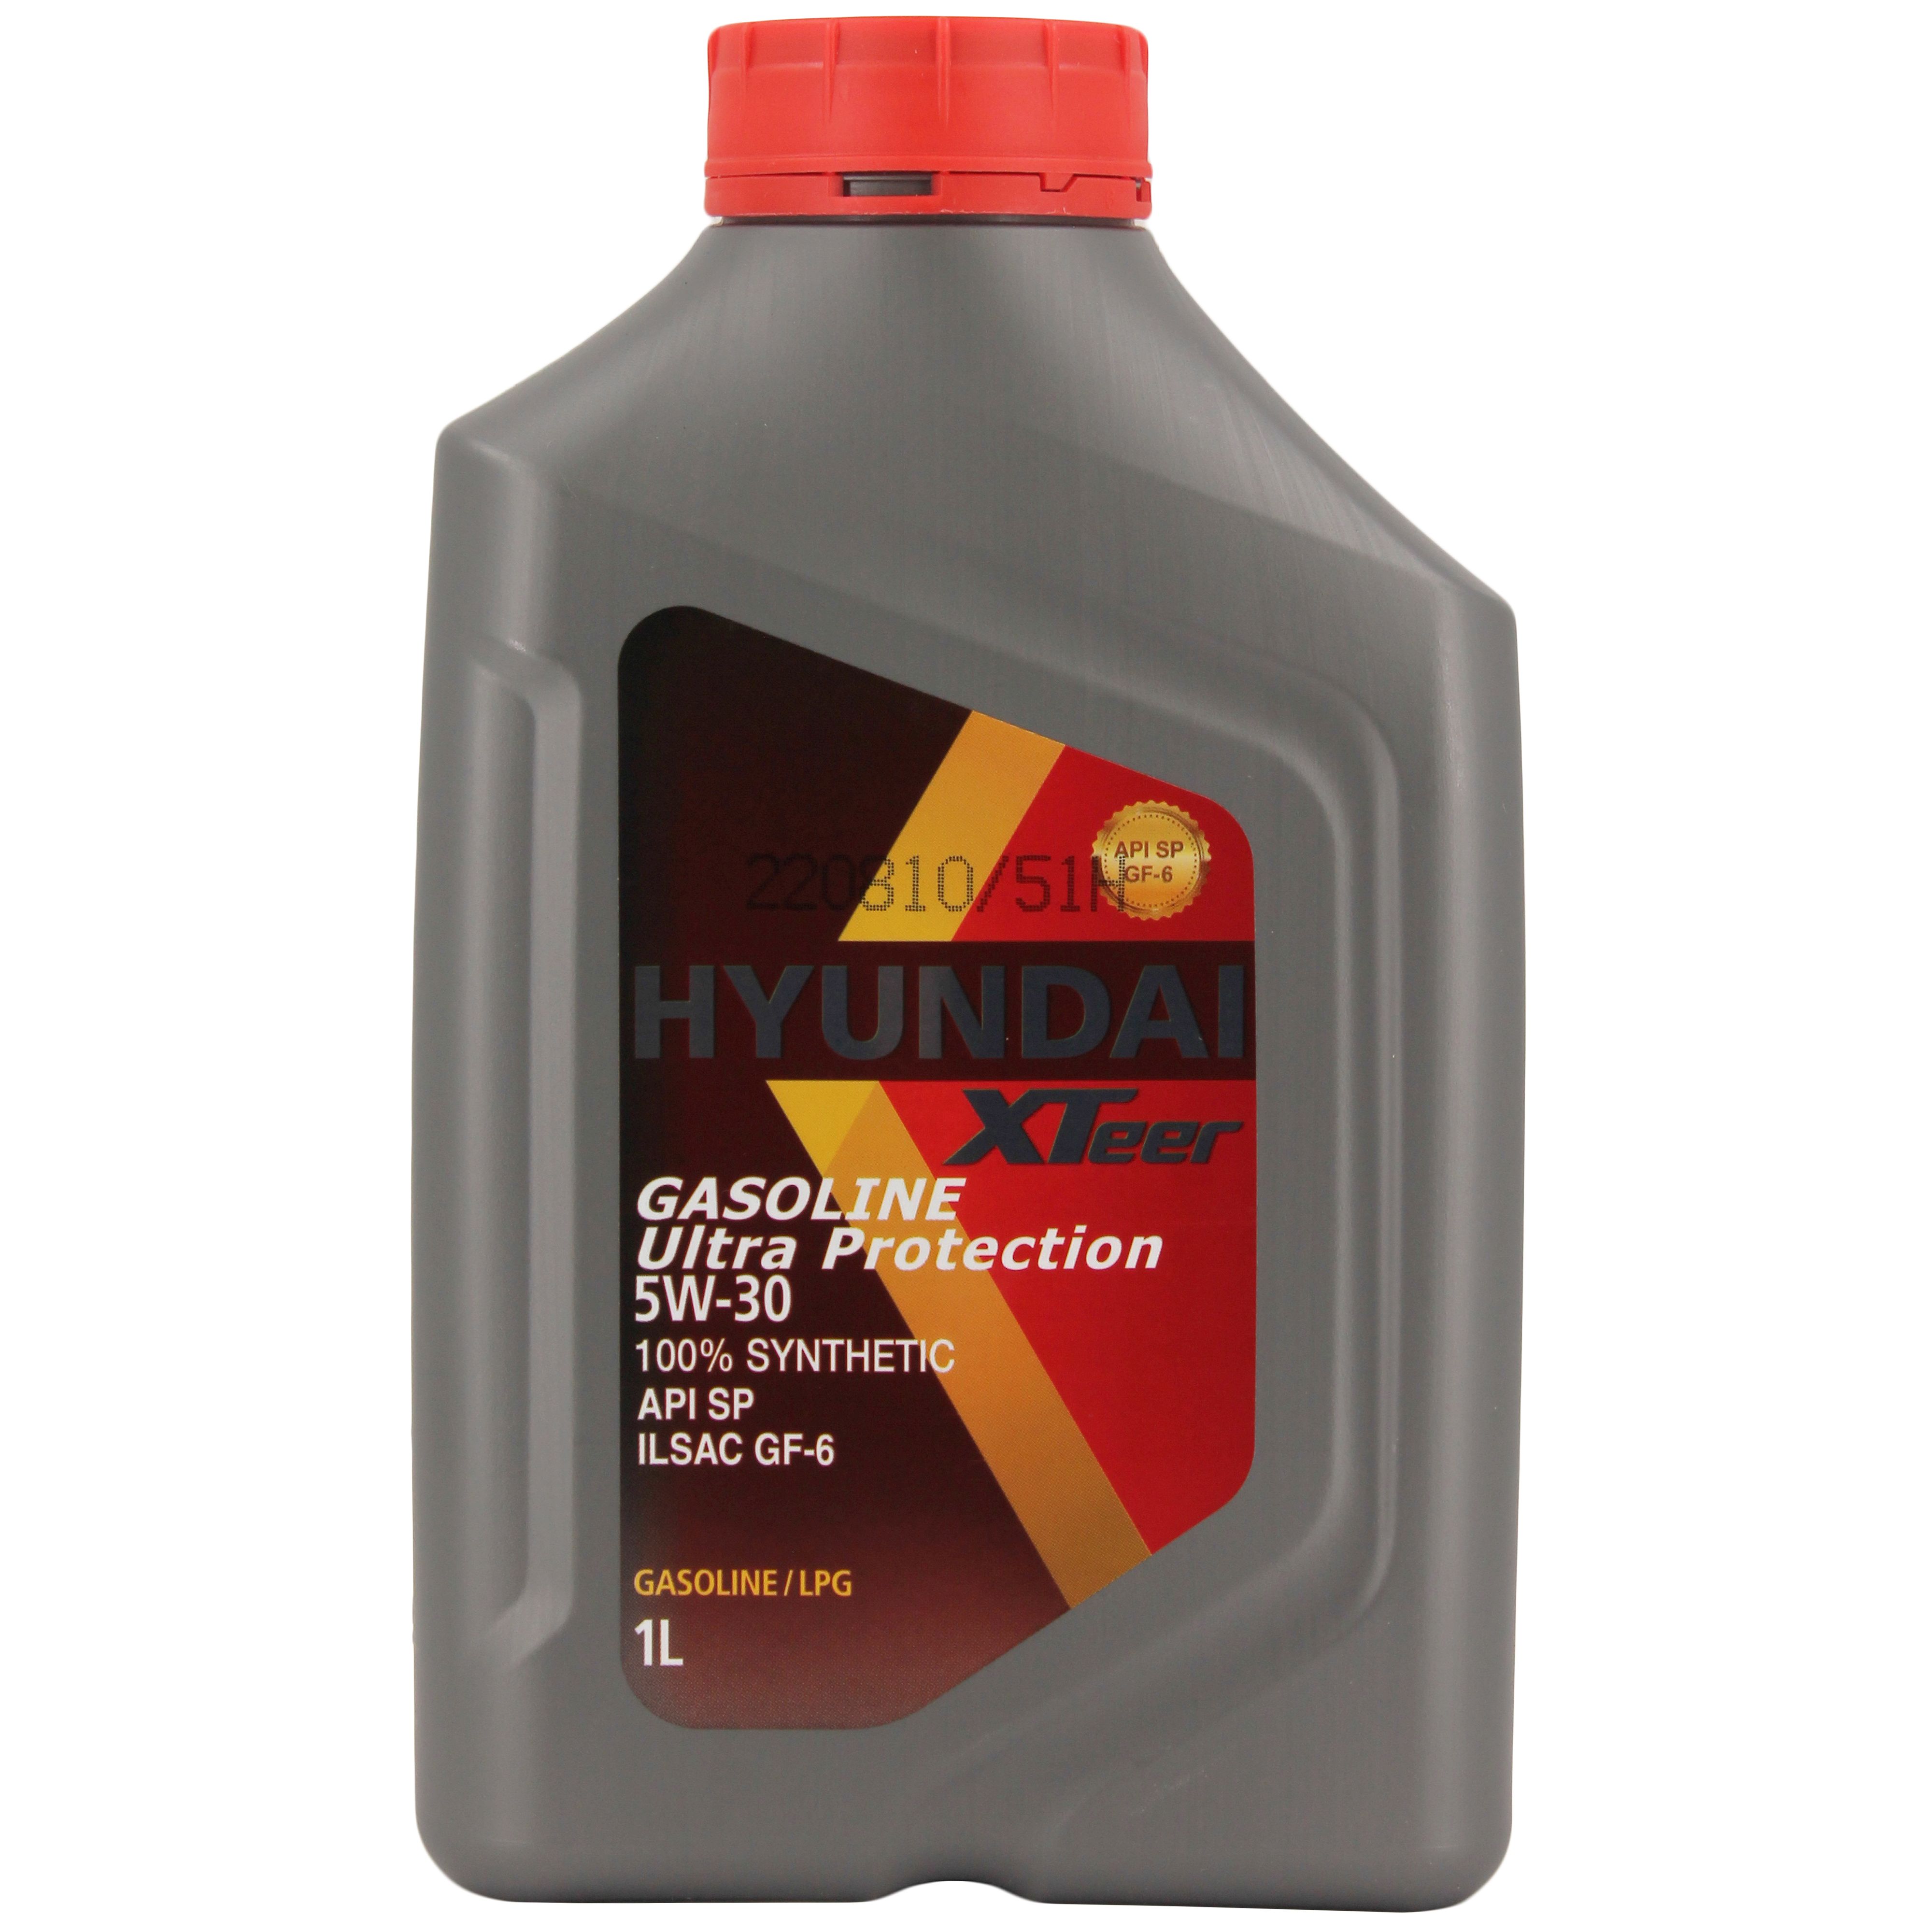 Масло моторное синтетическое "gasoline g700 5w-30", 1л. Hyundai XTEER масло gasoline g700 5w30 SP (4л. Масло hyundai gasoline ultra